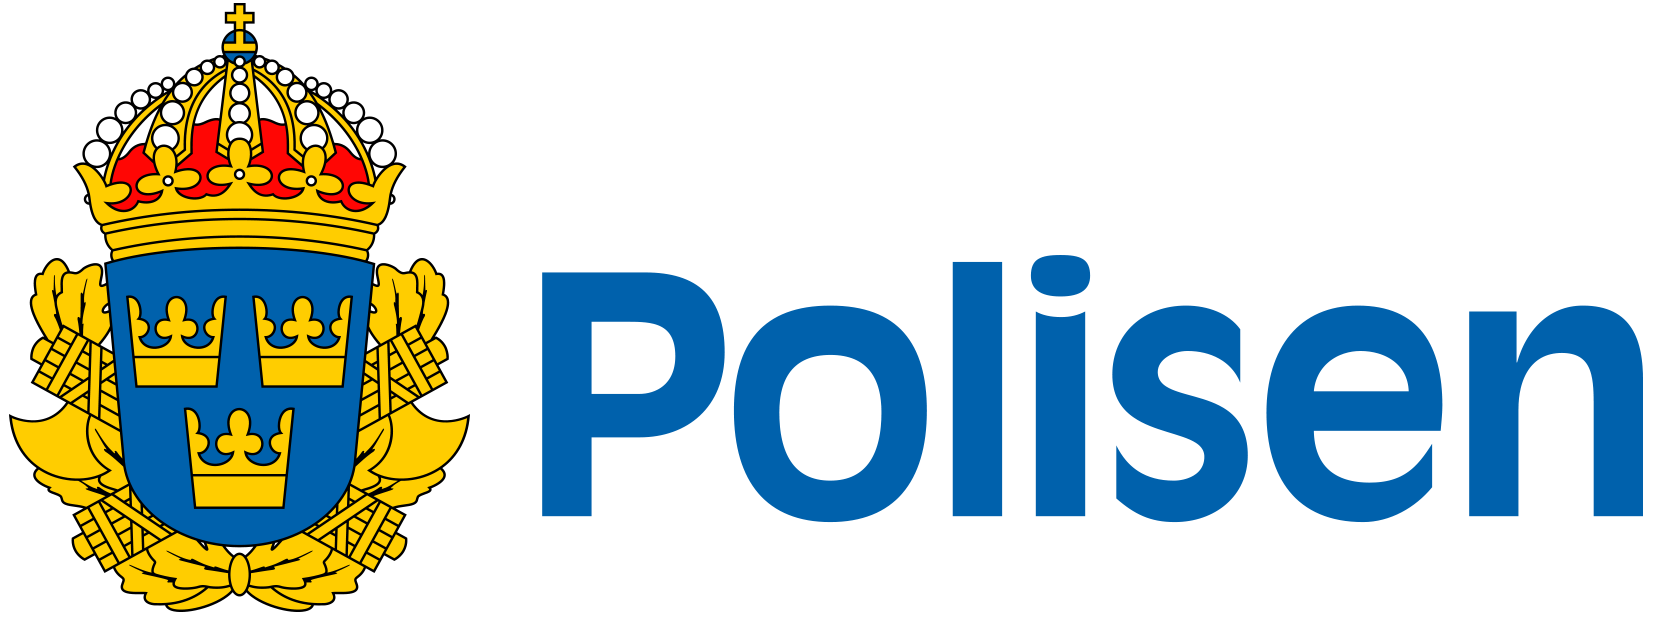 Polisen logo